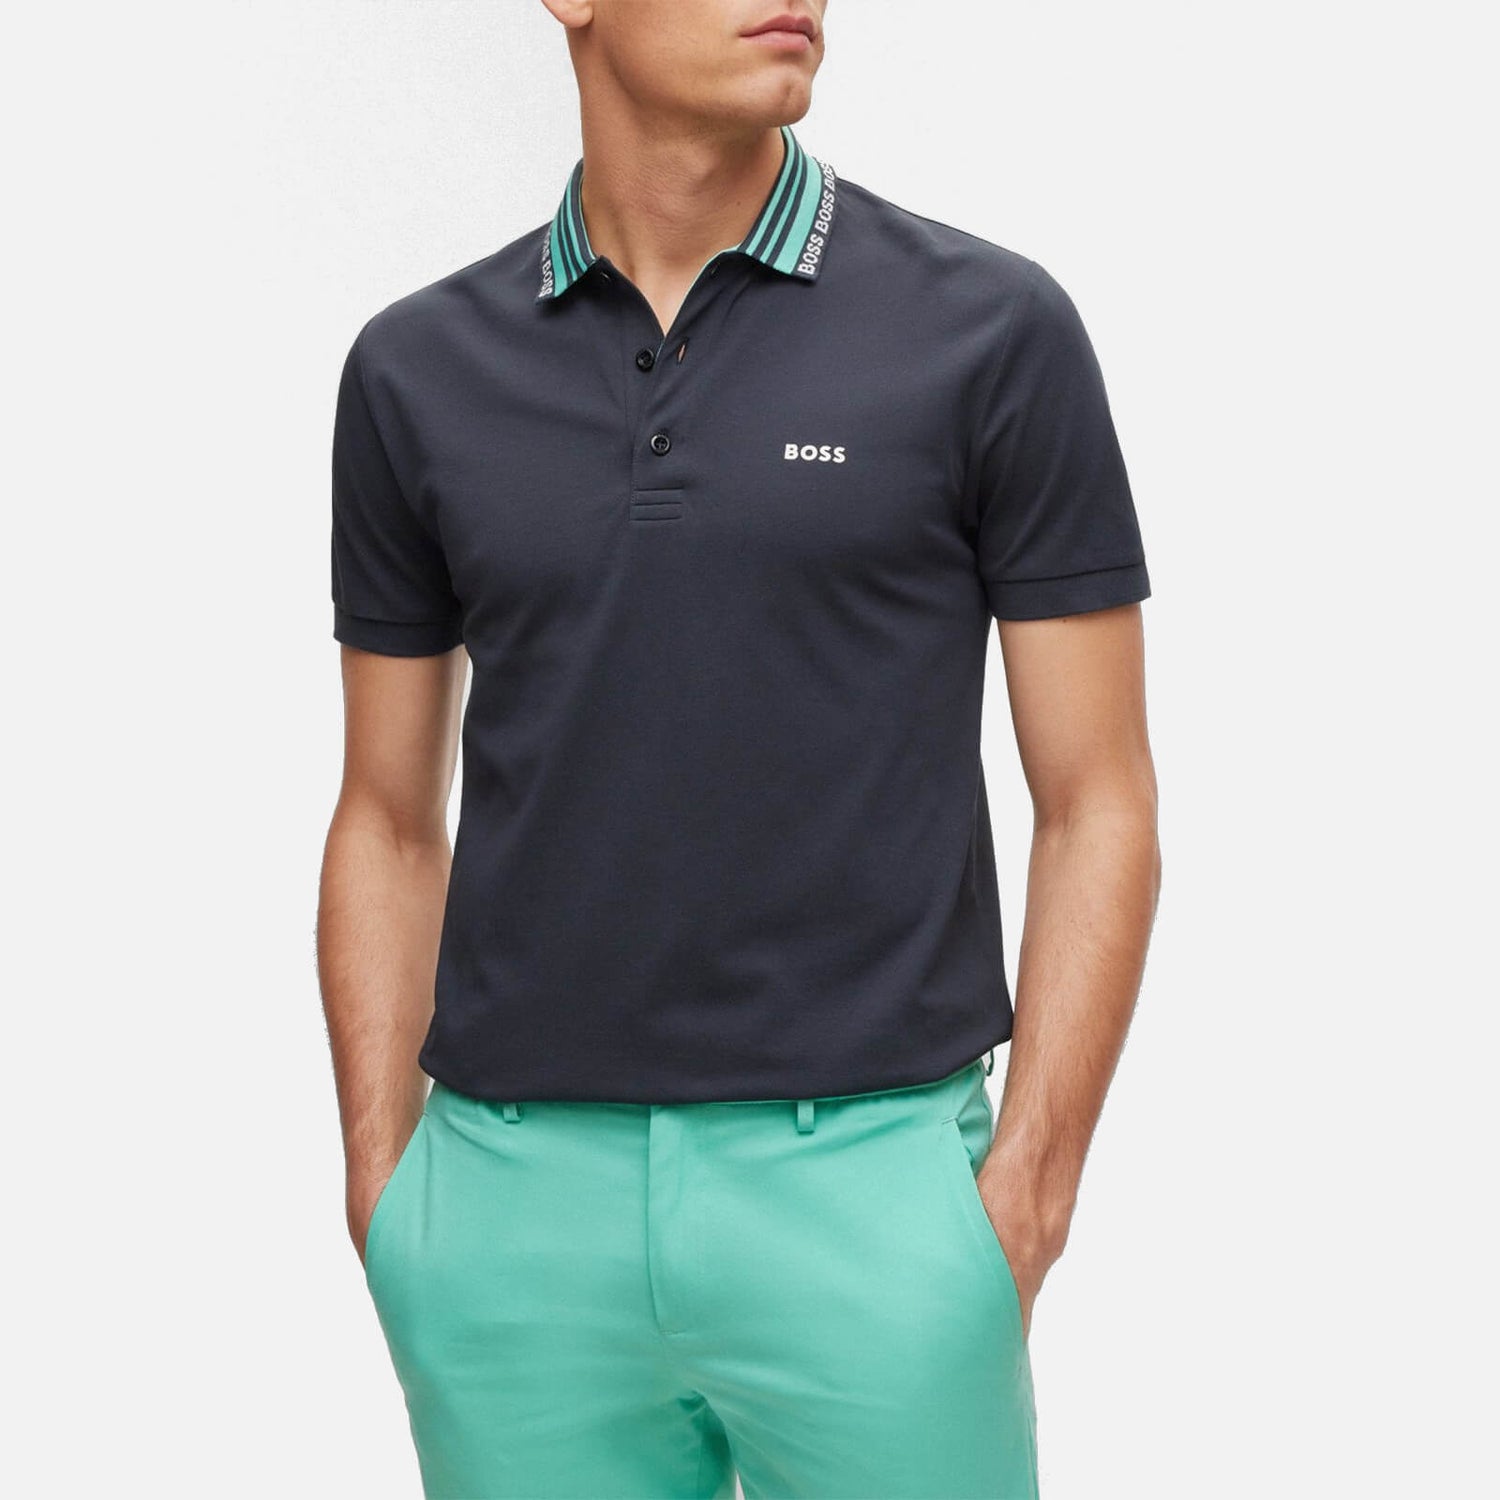 BOSS Green Paule 2 Cotton-Blend Polo Shirt - S